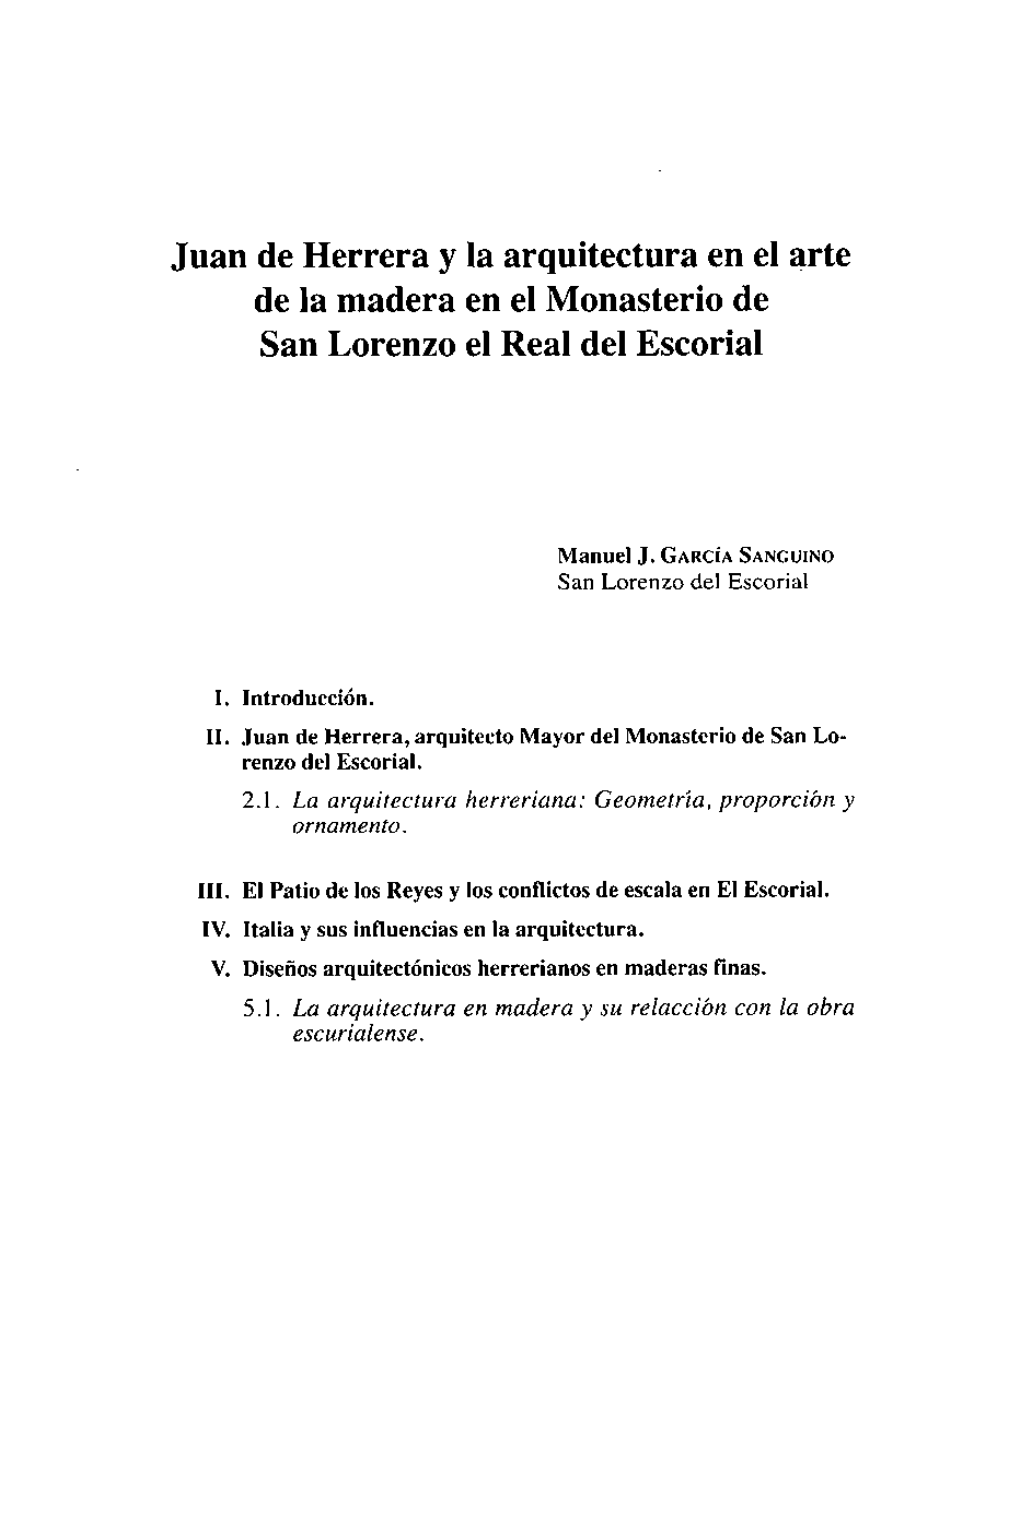 Juan De Herrera Y La Arquitectura En El Arte De La Madera En El Monasterio De San Lorenzo El Real Del Escorial